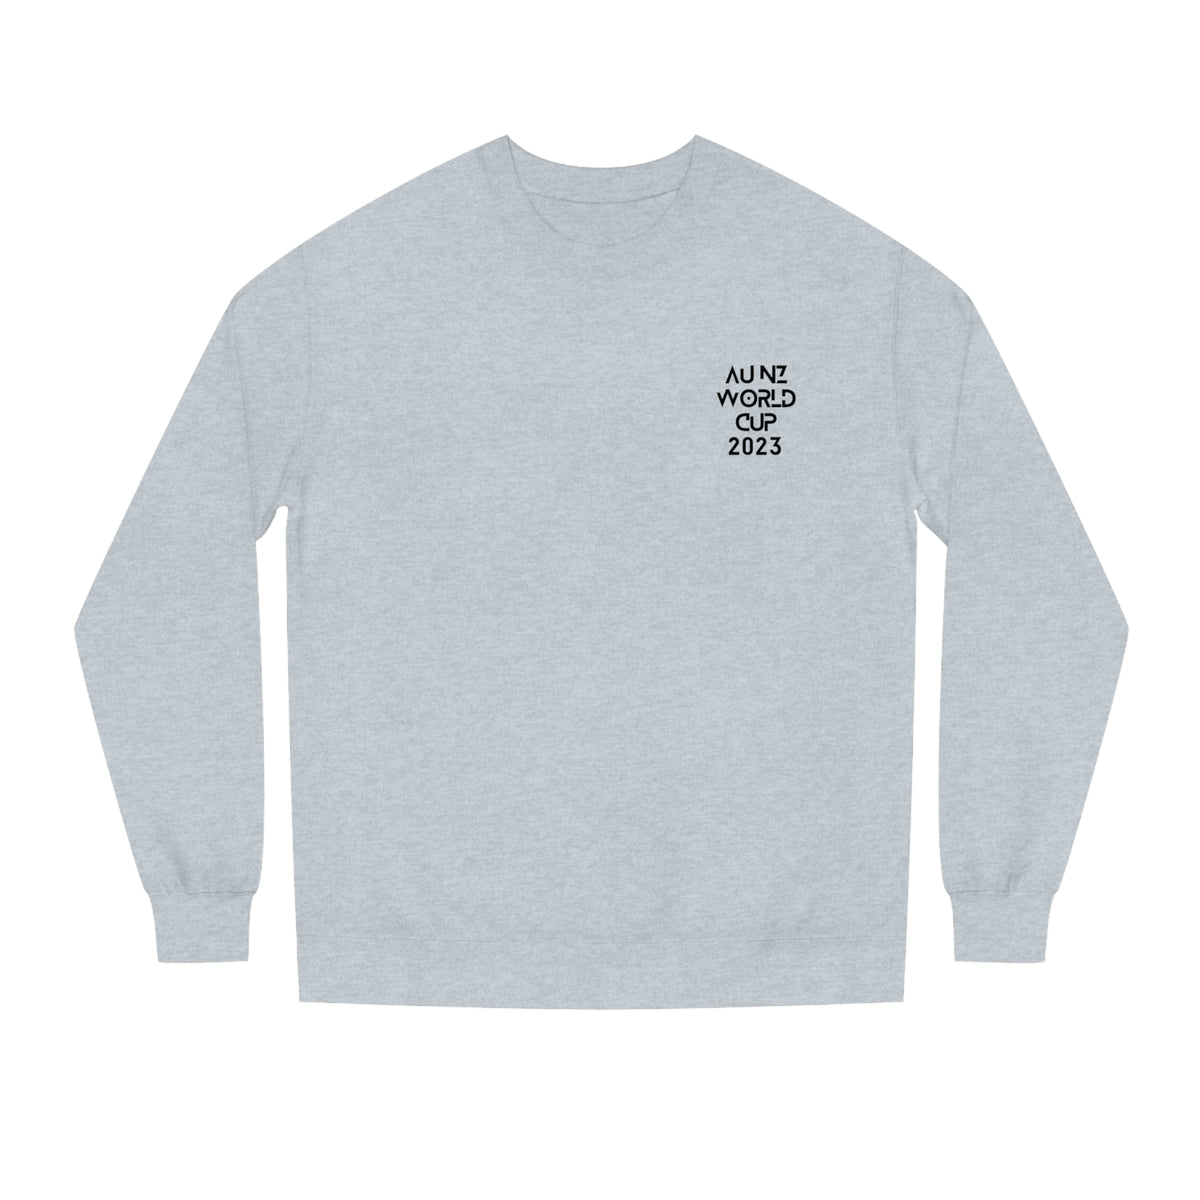 Limited Edition AU-NZ World Cup Adult Crewneck Sweatshirt